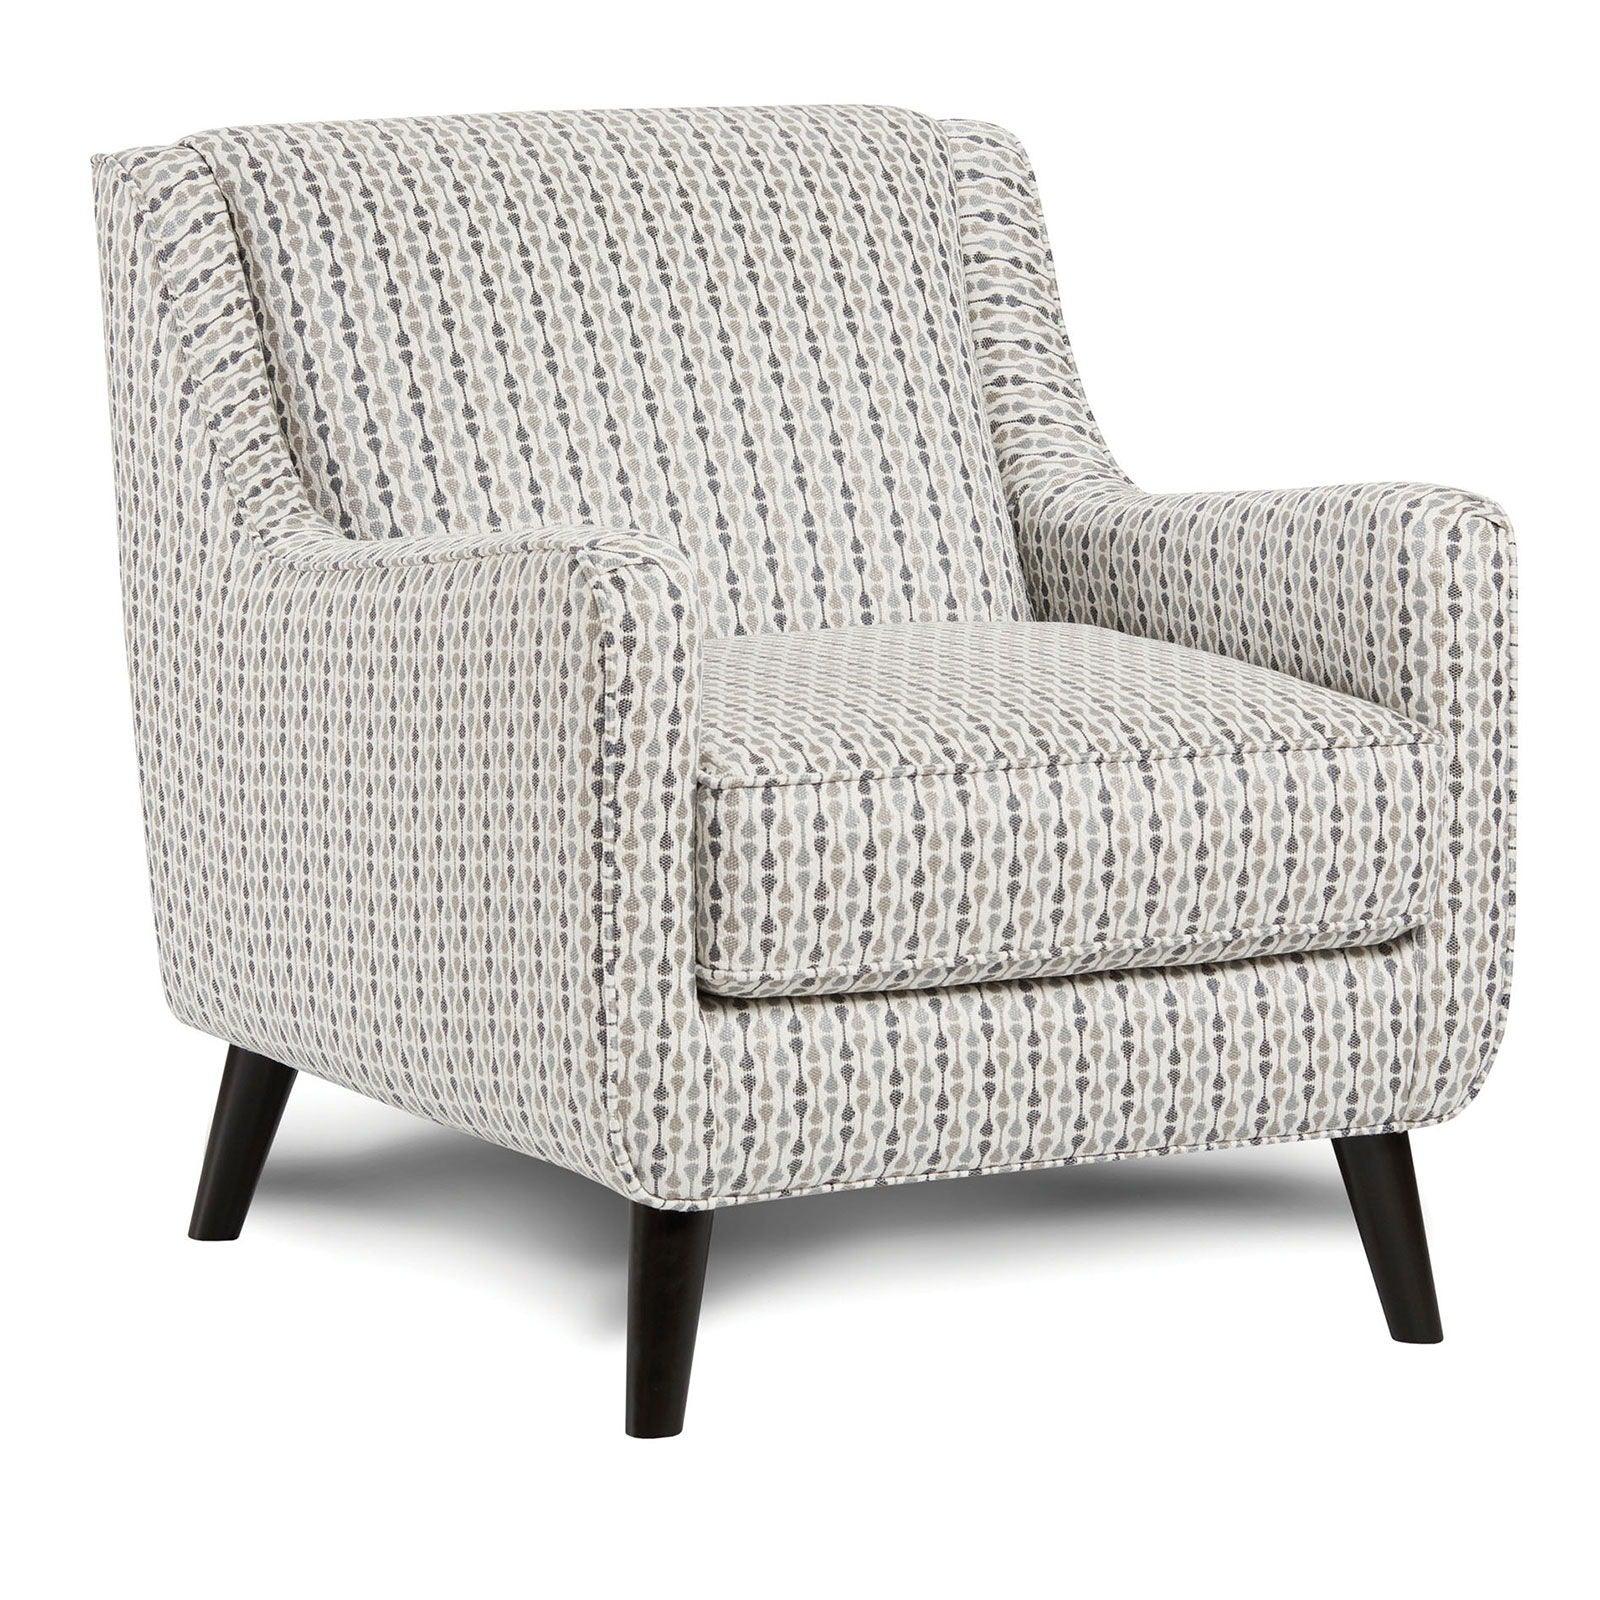 Furniture of America - Pelham - Accent Chair - Stripe Multi - 5th Avenue Furniture